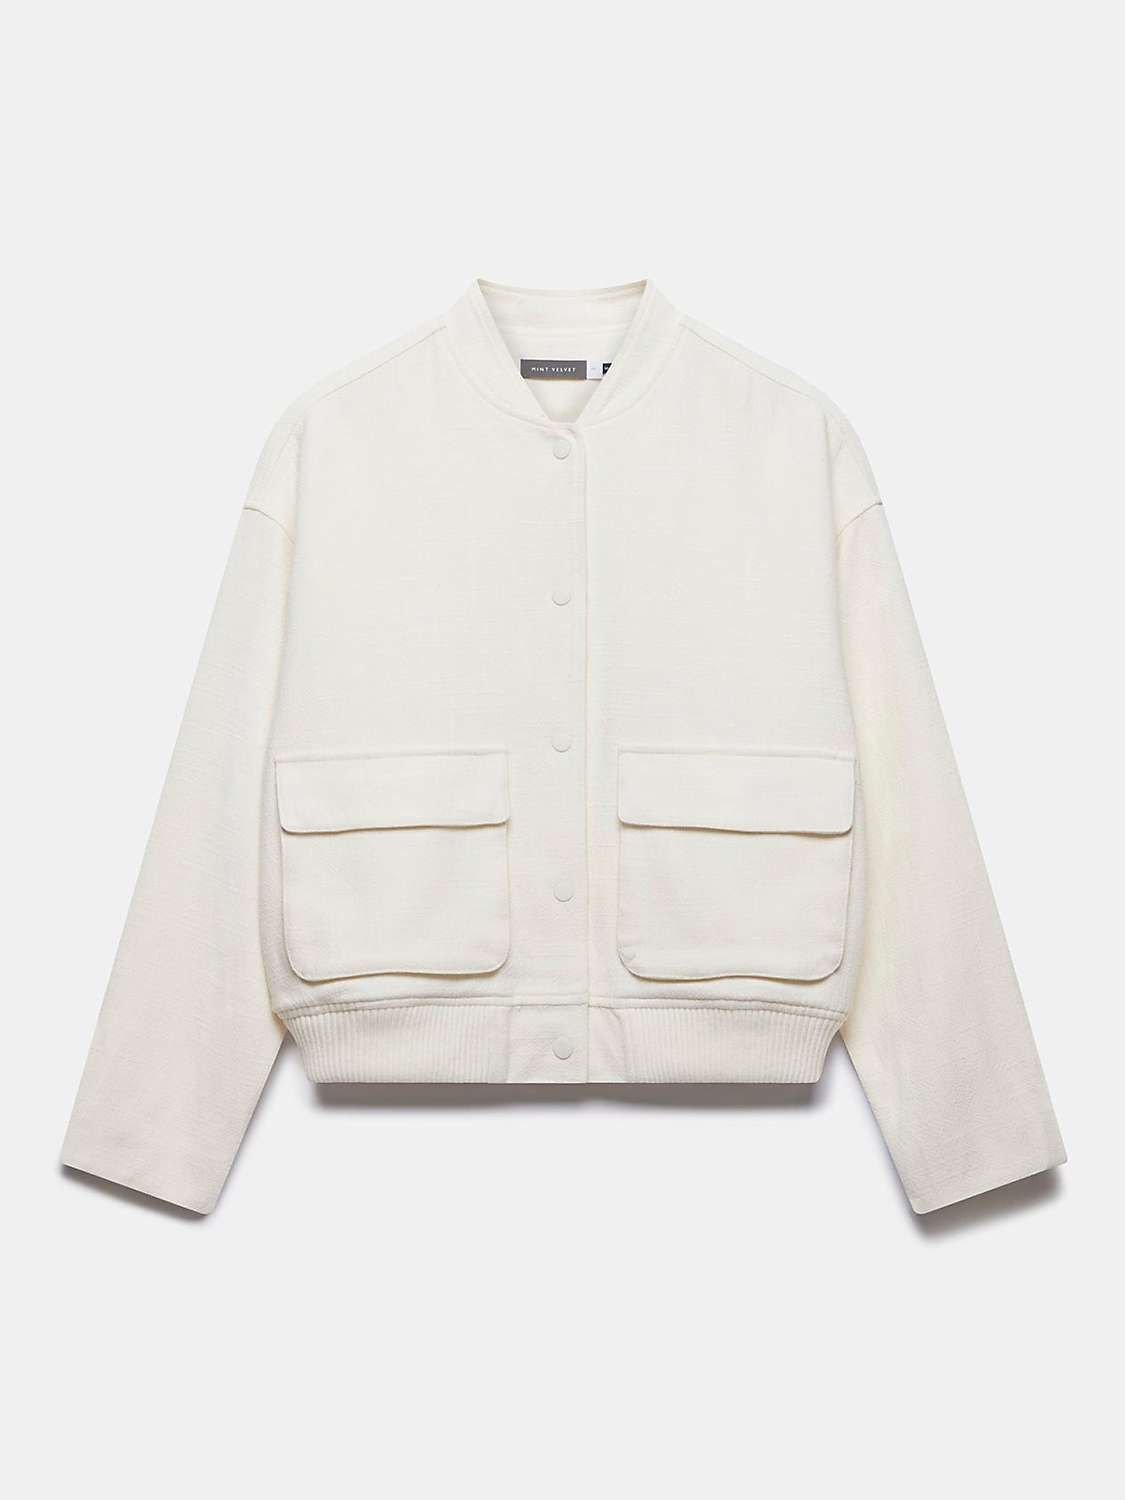 Buy Mint Velvet Textured Bomber Jacket, White Ivory Online at johnlewis.com